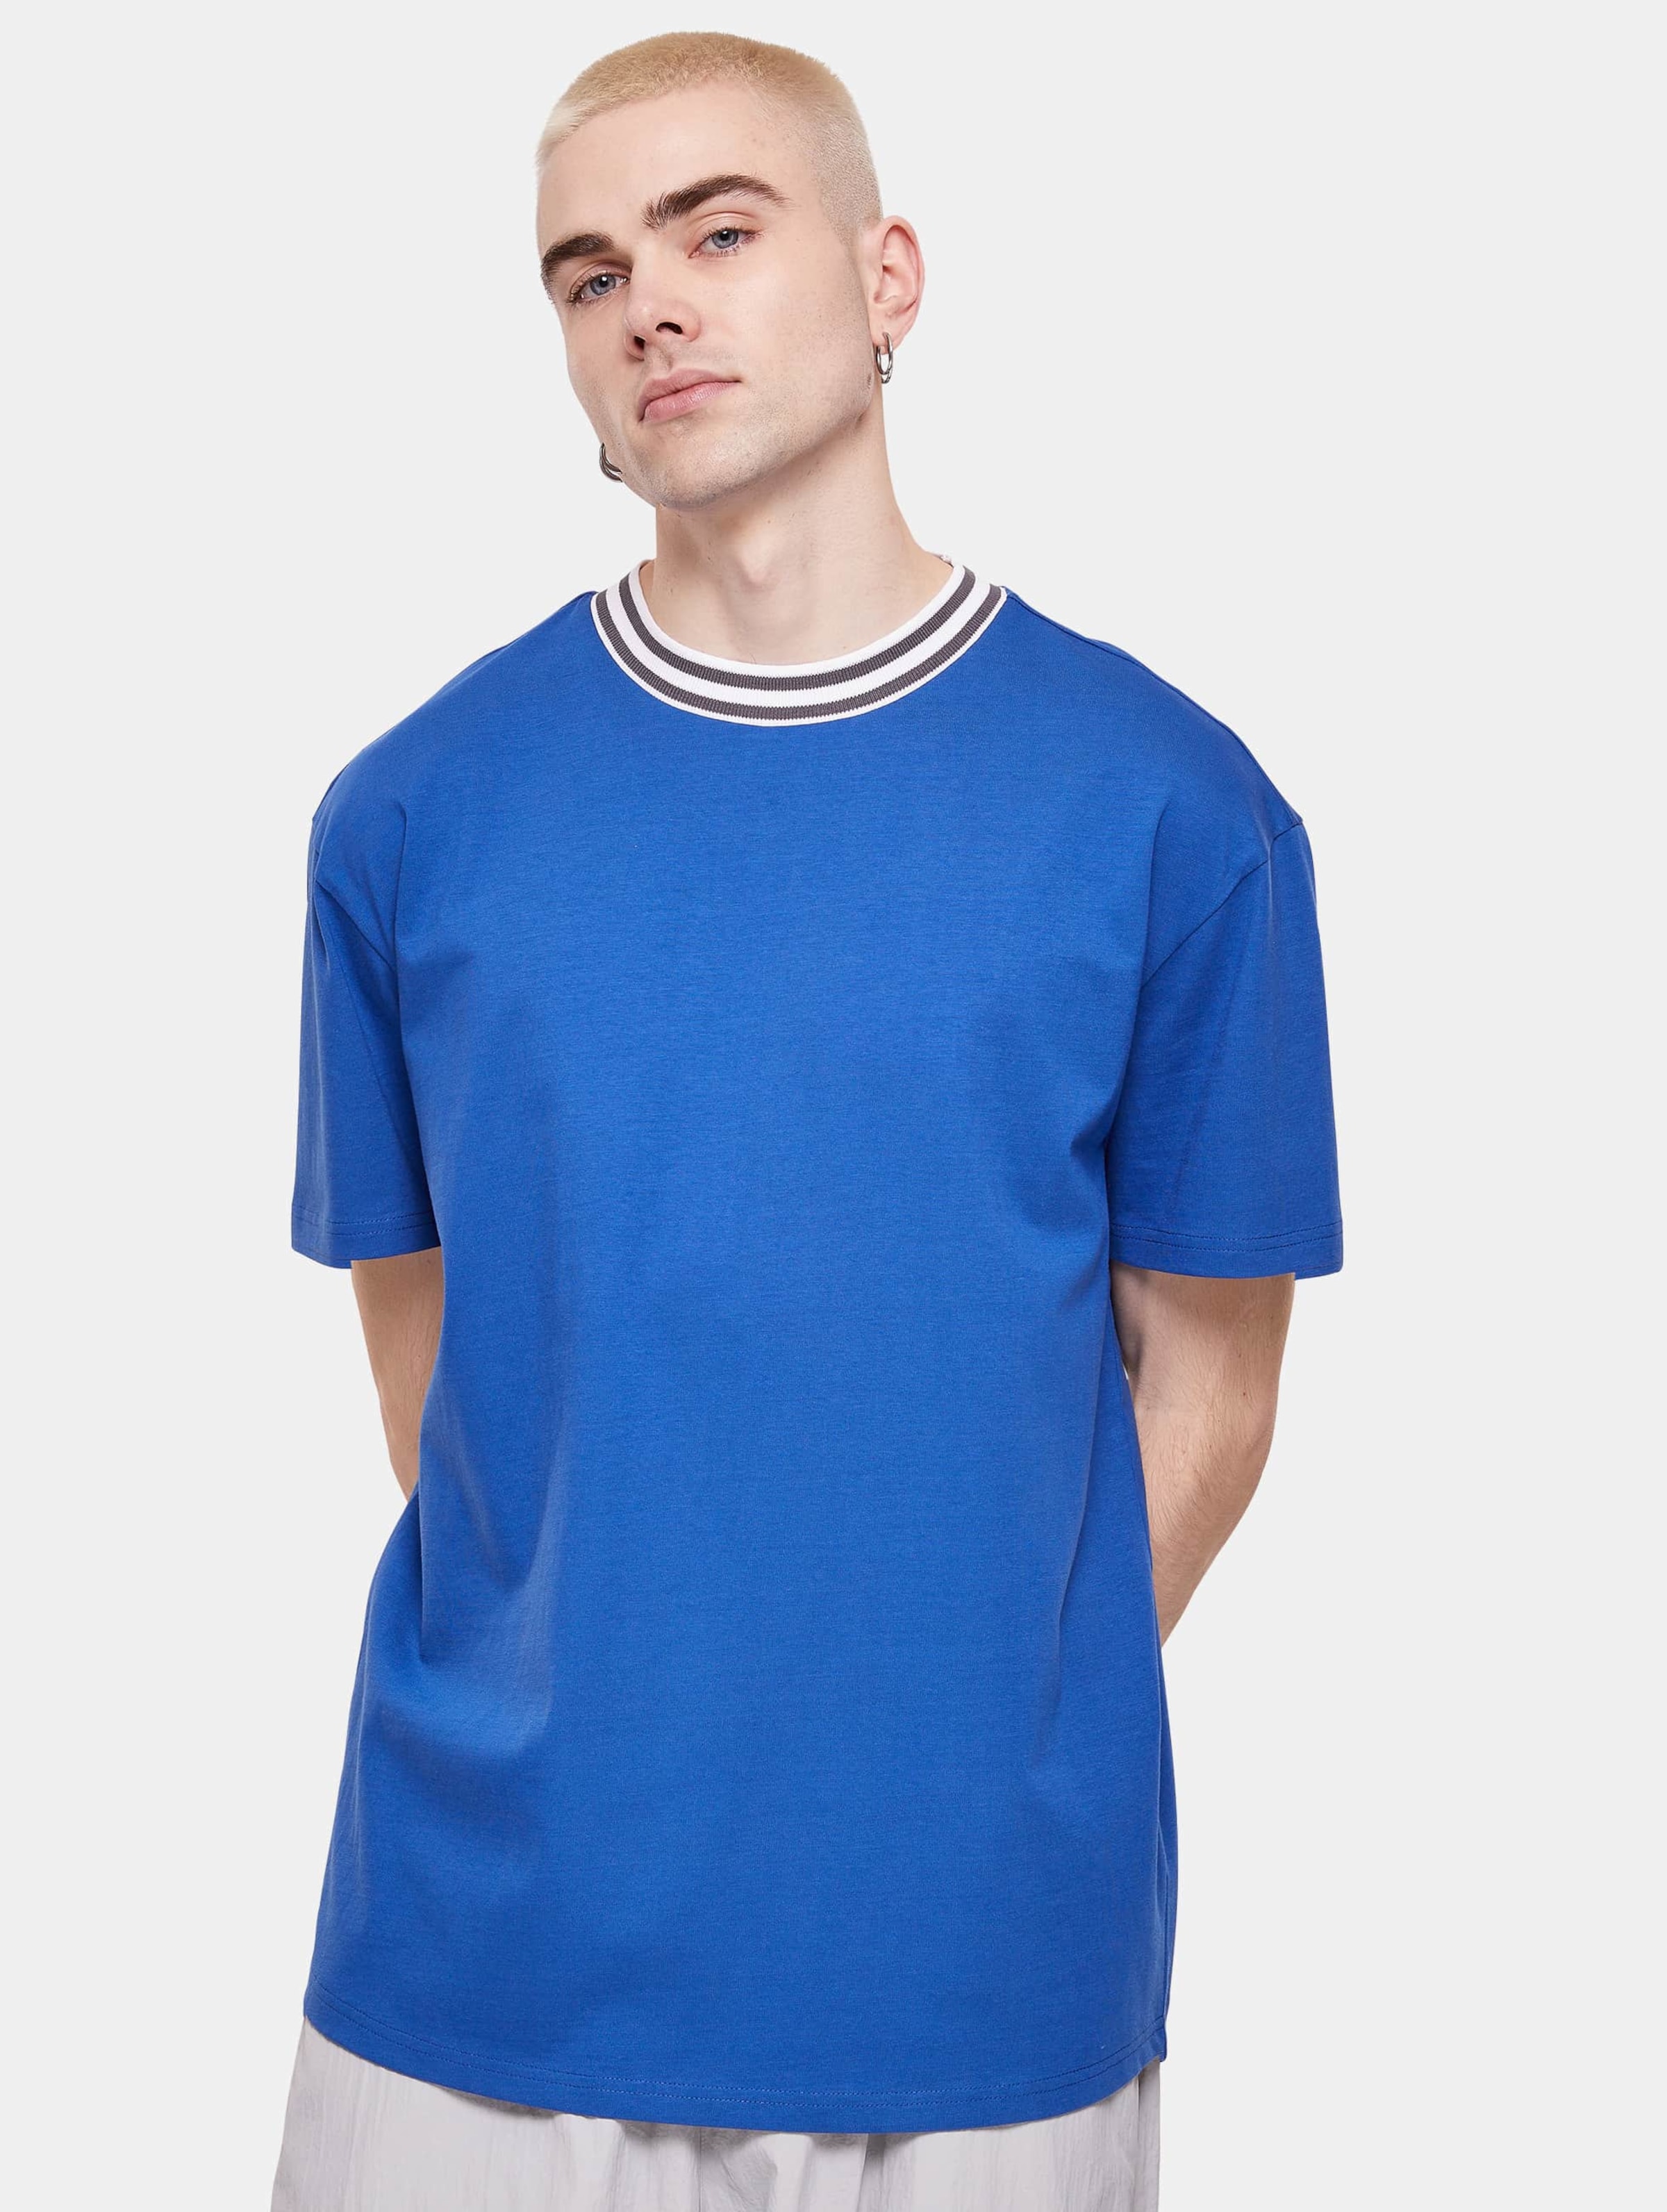 Urban Classics - Kicker Mens Tshirt - M - Blauw